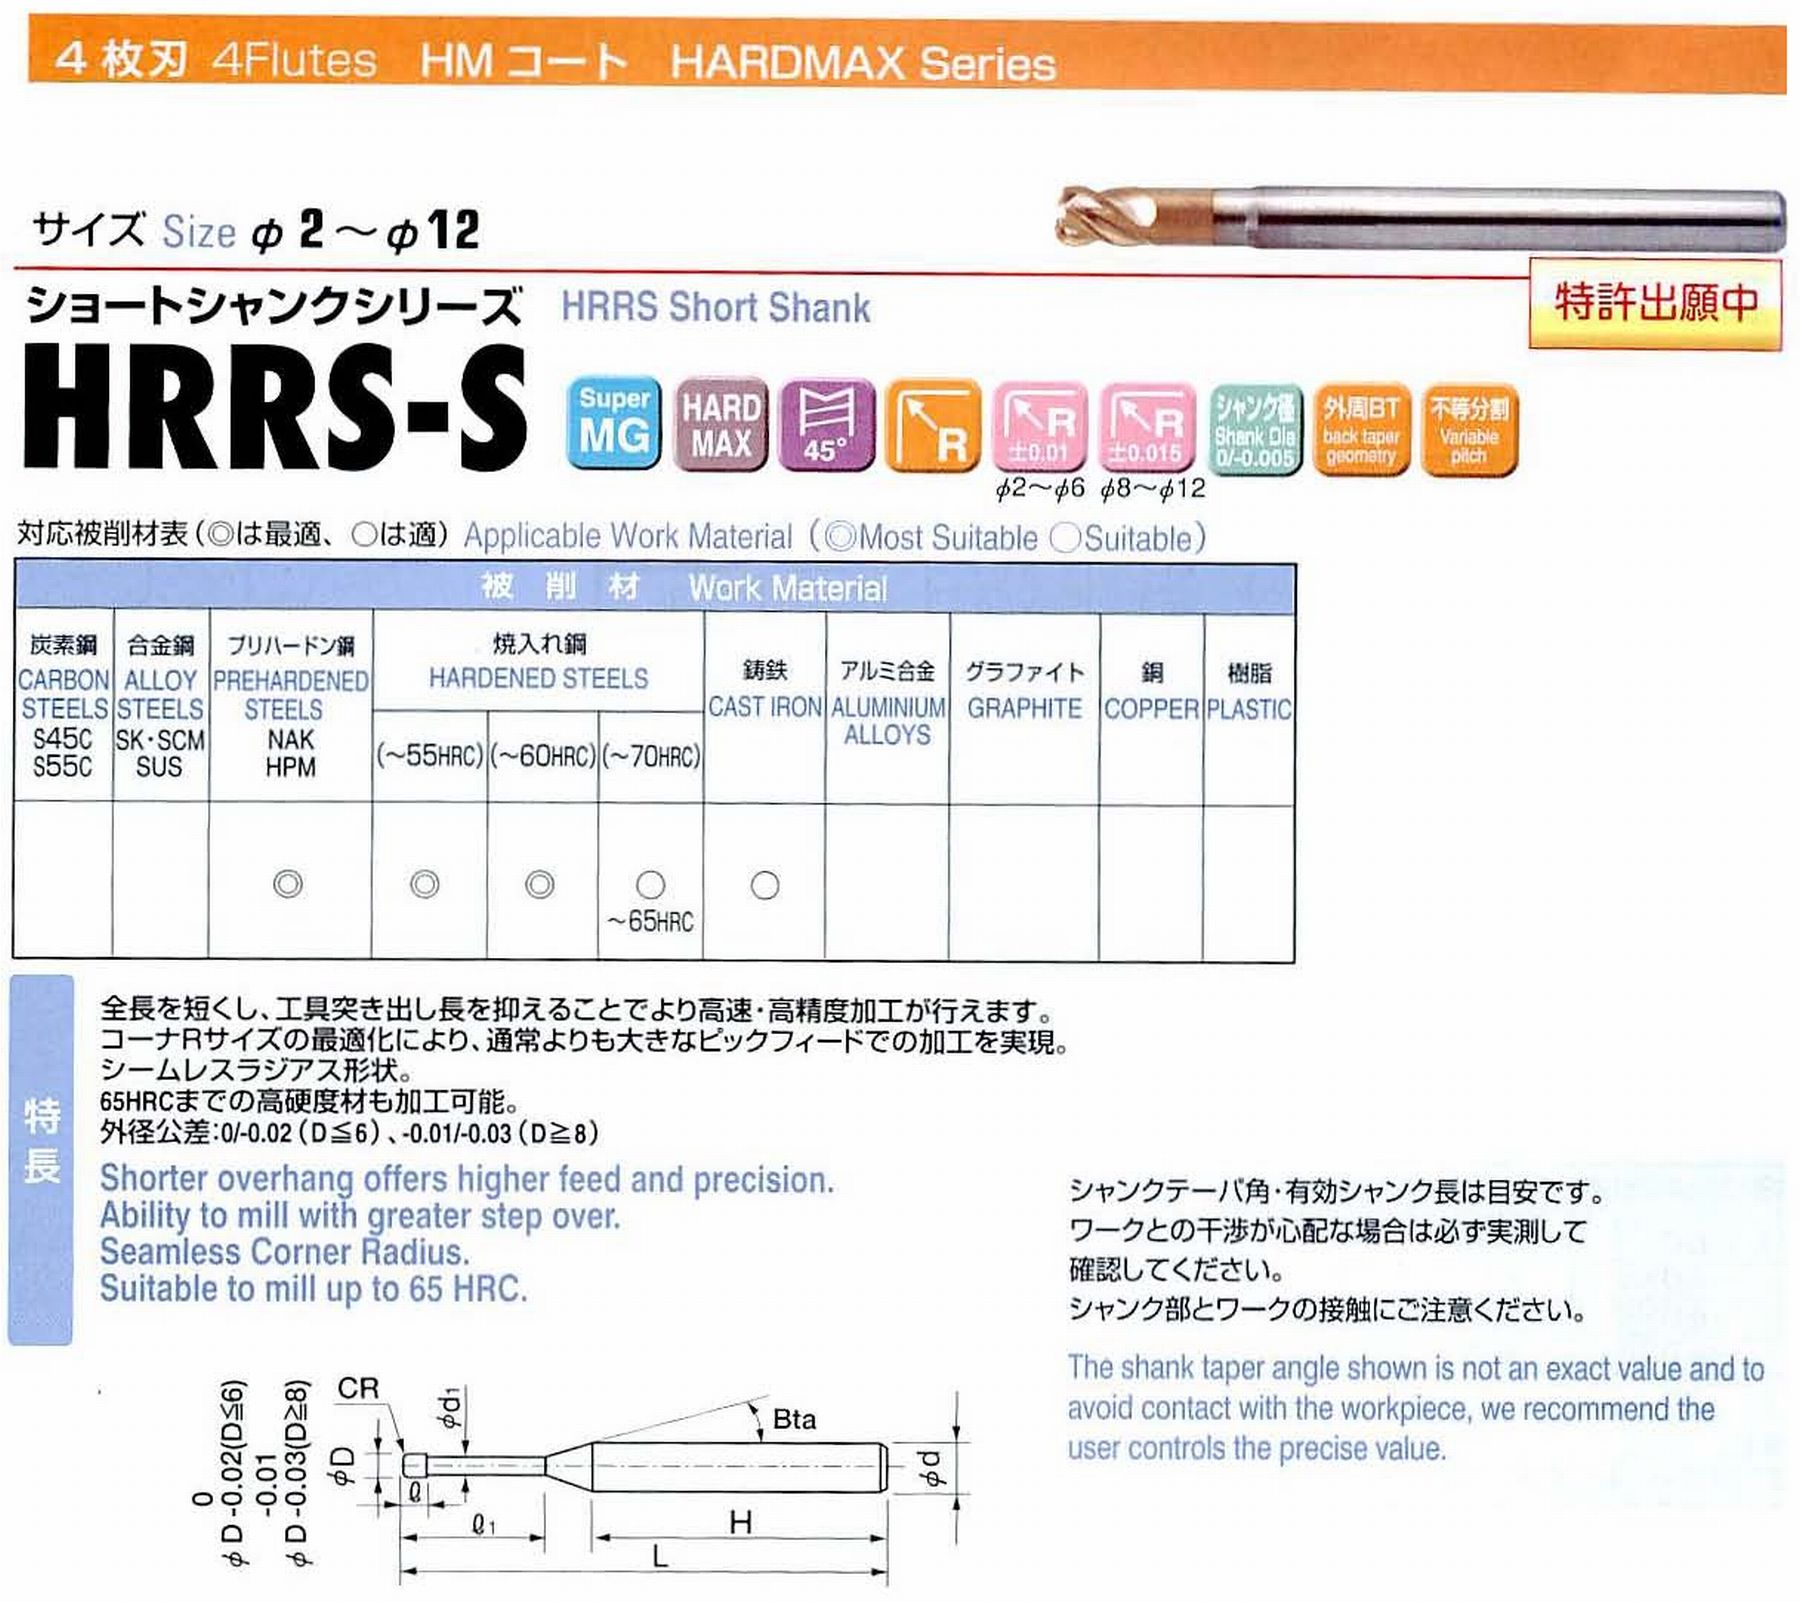 ユニオンツール 4枚刃 HRRS4020-05-06S 外径2 コーナ半径R0.5 有効長6 刃長2 首径1.91 シャンクテーパ角16° 全長45 シャンク径4 有効シャンク長33.0